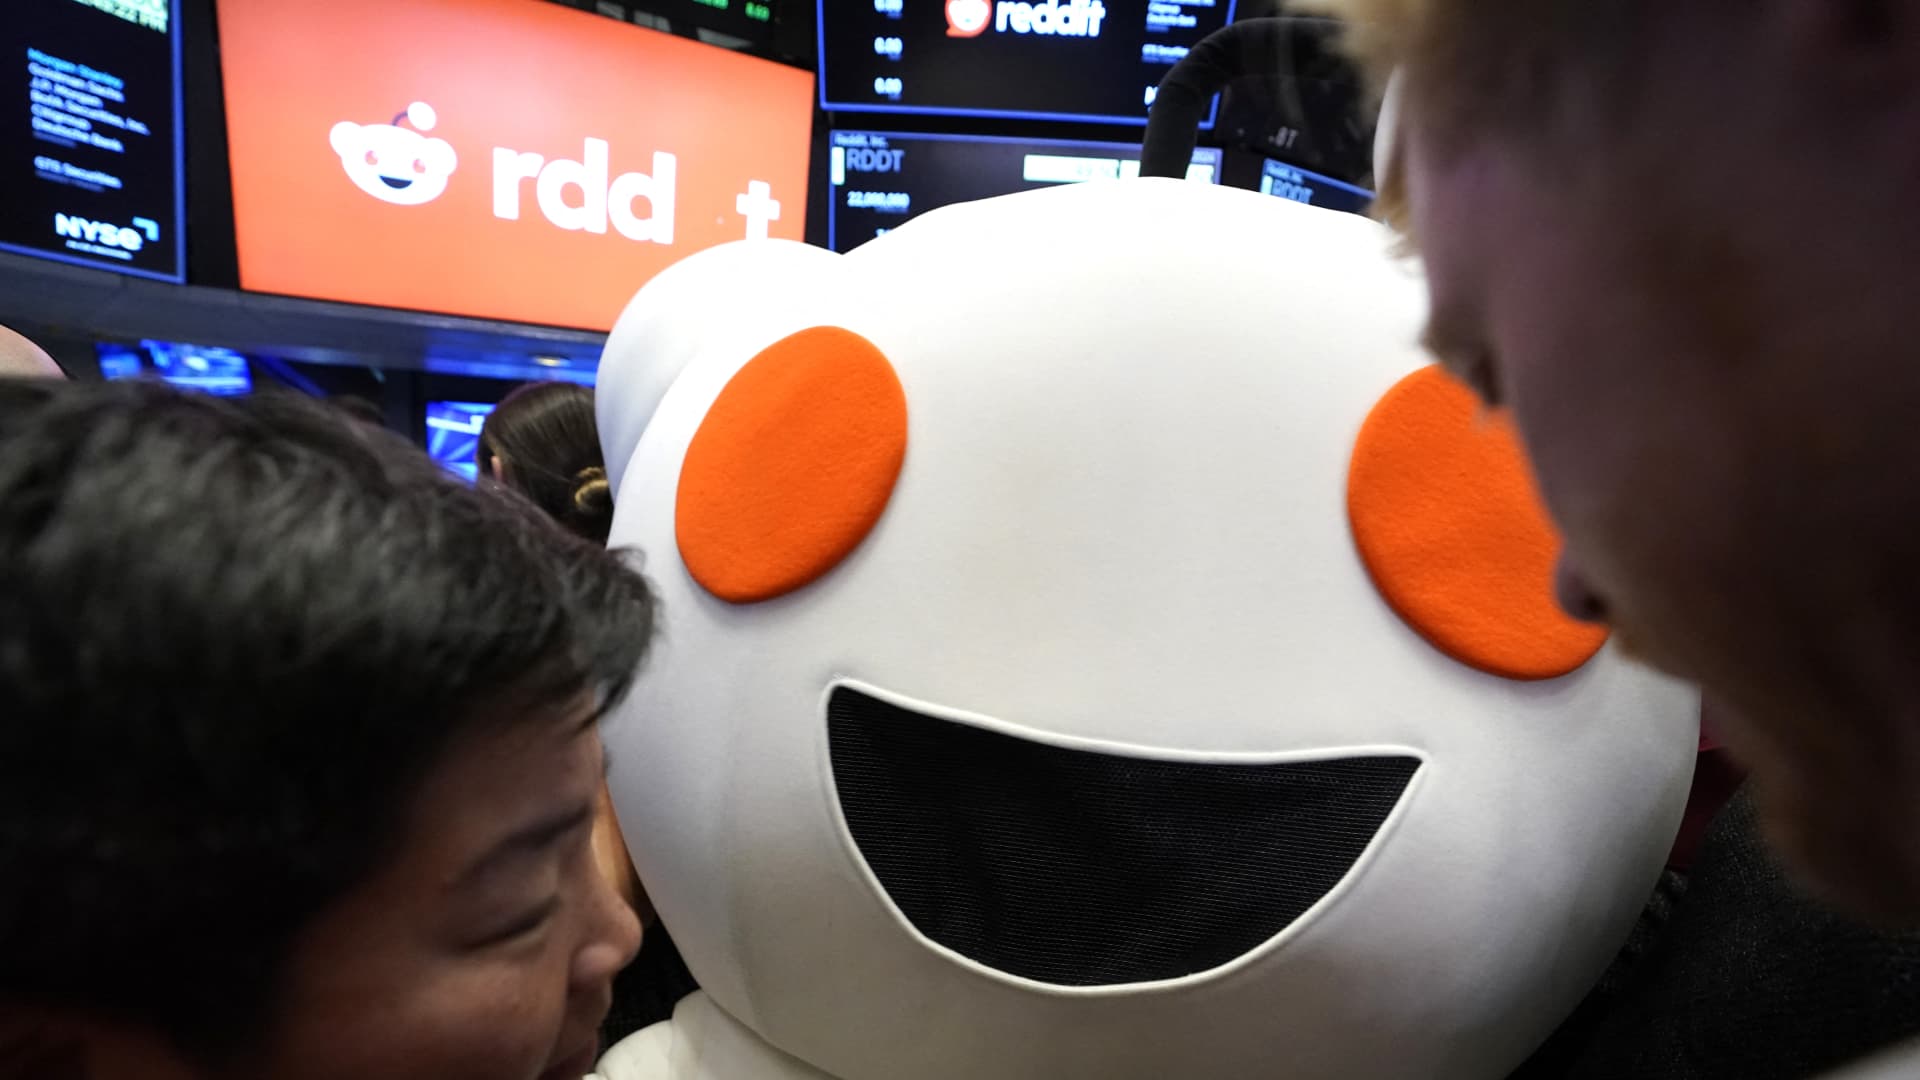 Sam Altman’s Reddit stake worth over $600 million after NYSE debut